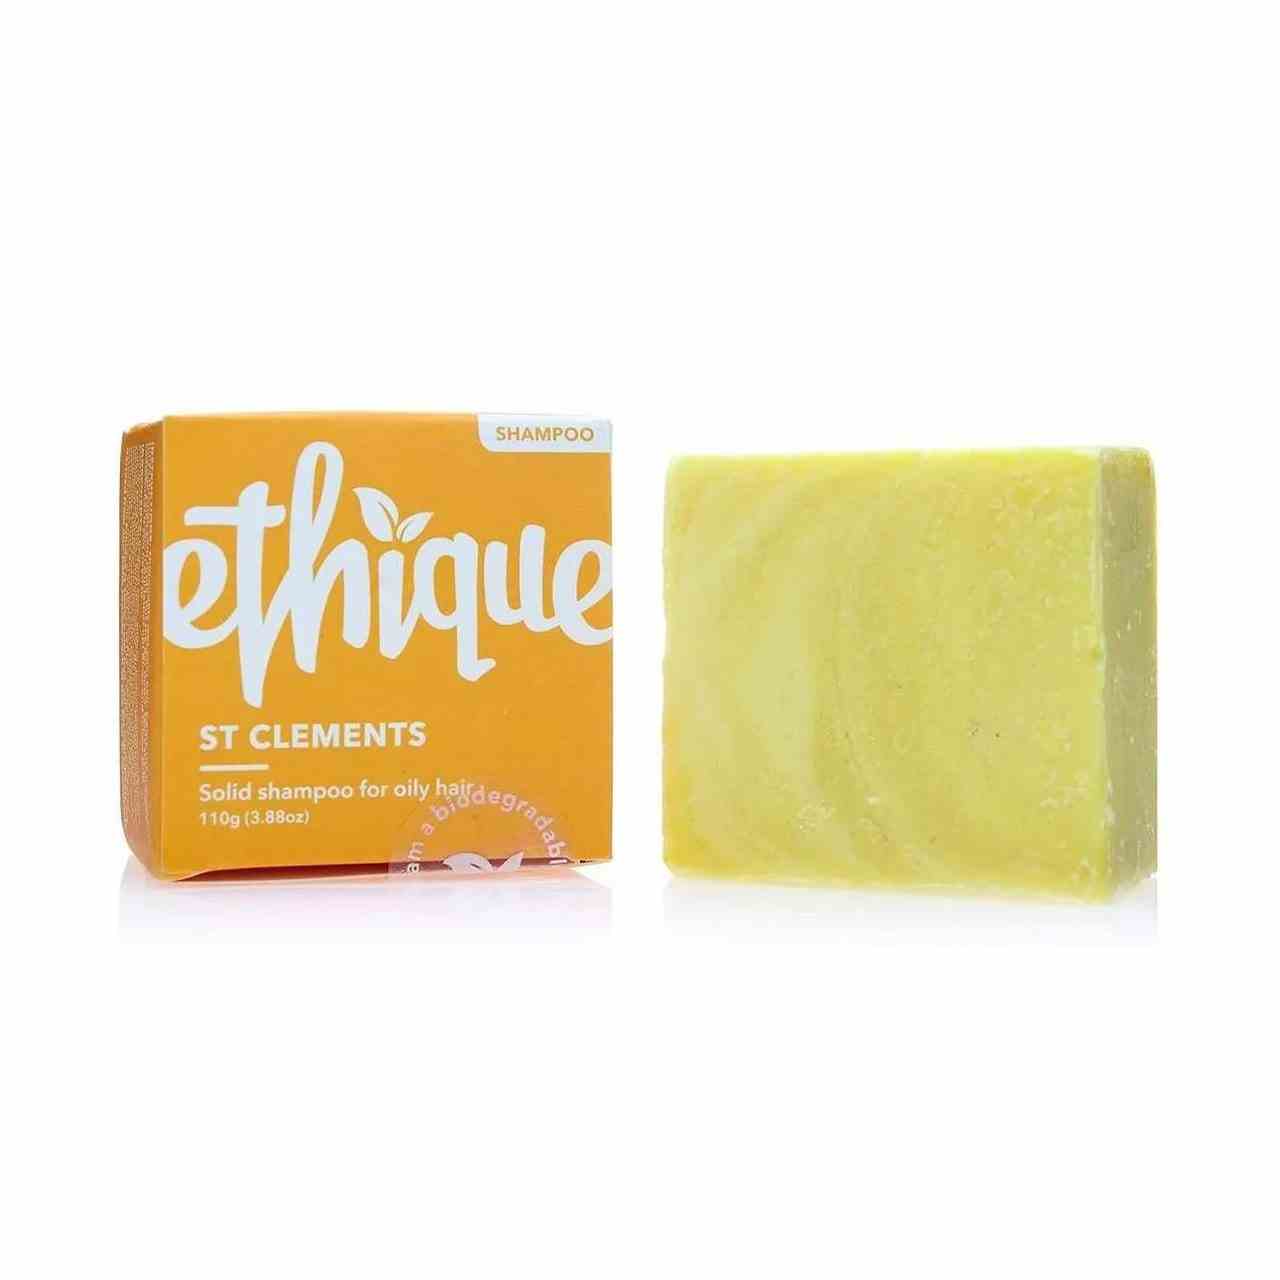 Ethique Shampoo Bar für fettiges Haar gelber Shampoo Bar mit orangefarbener Box auf weißem Hintergrund